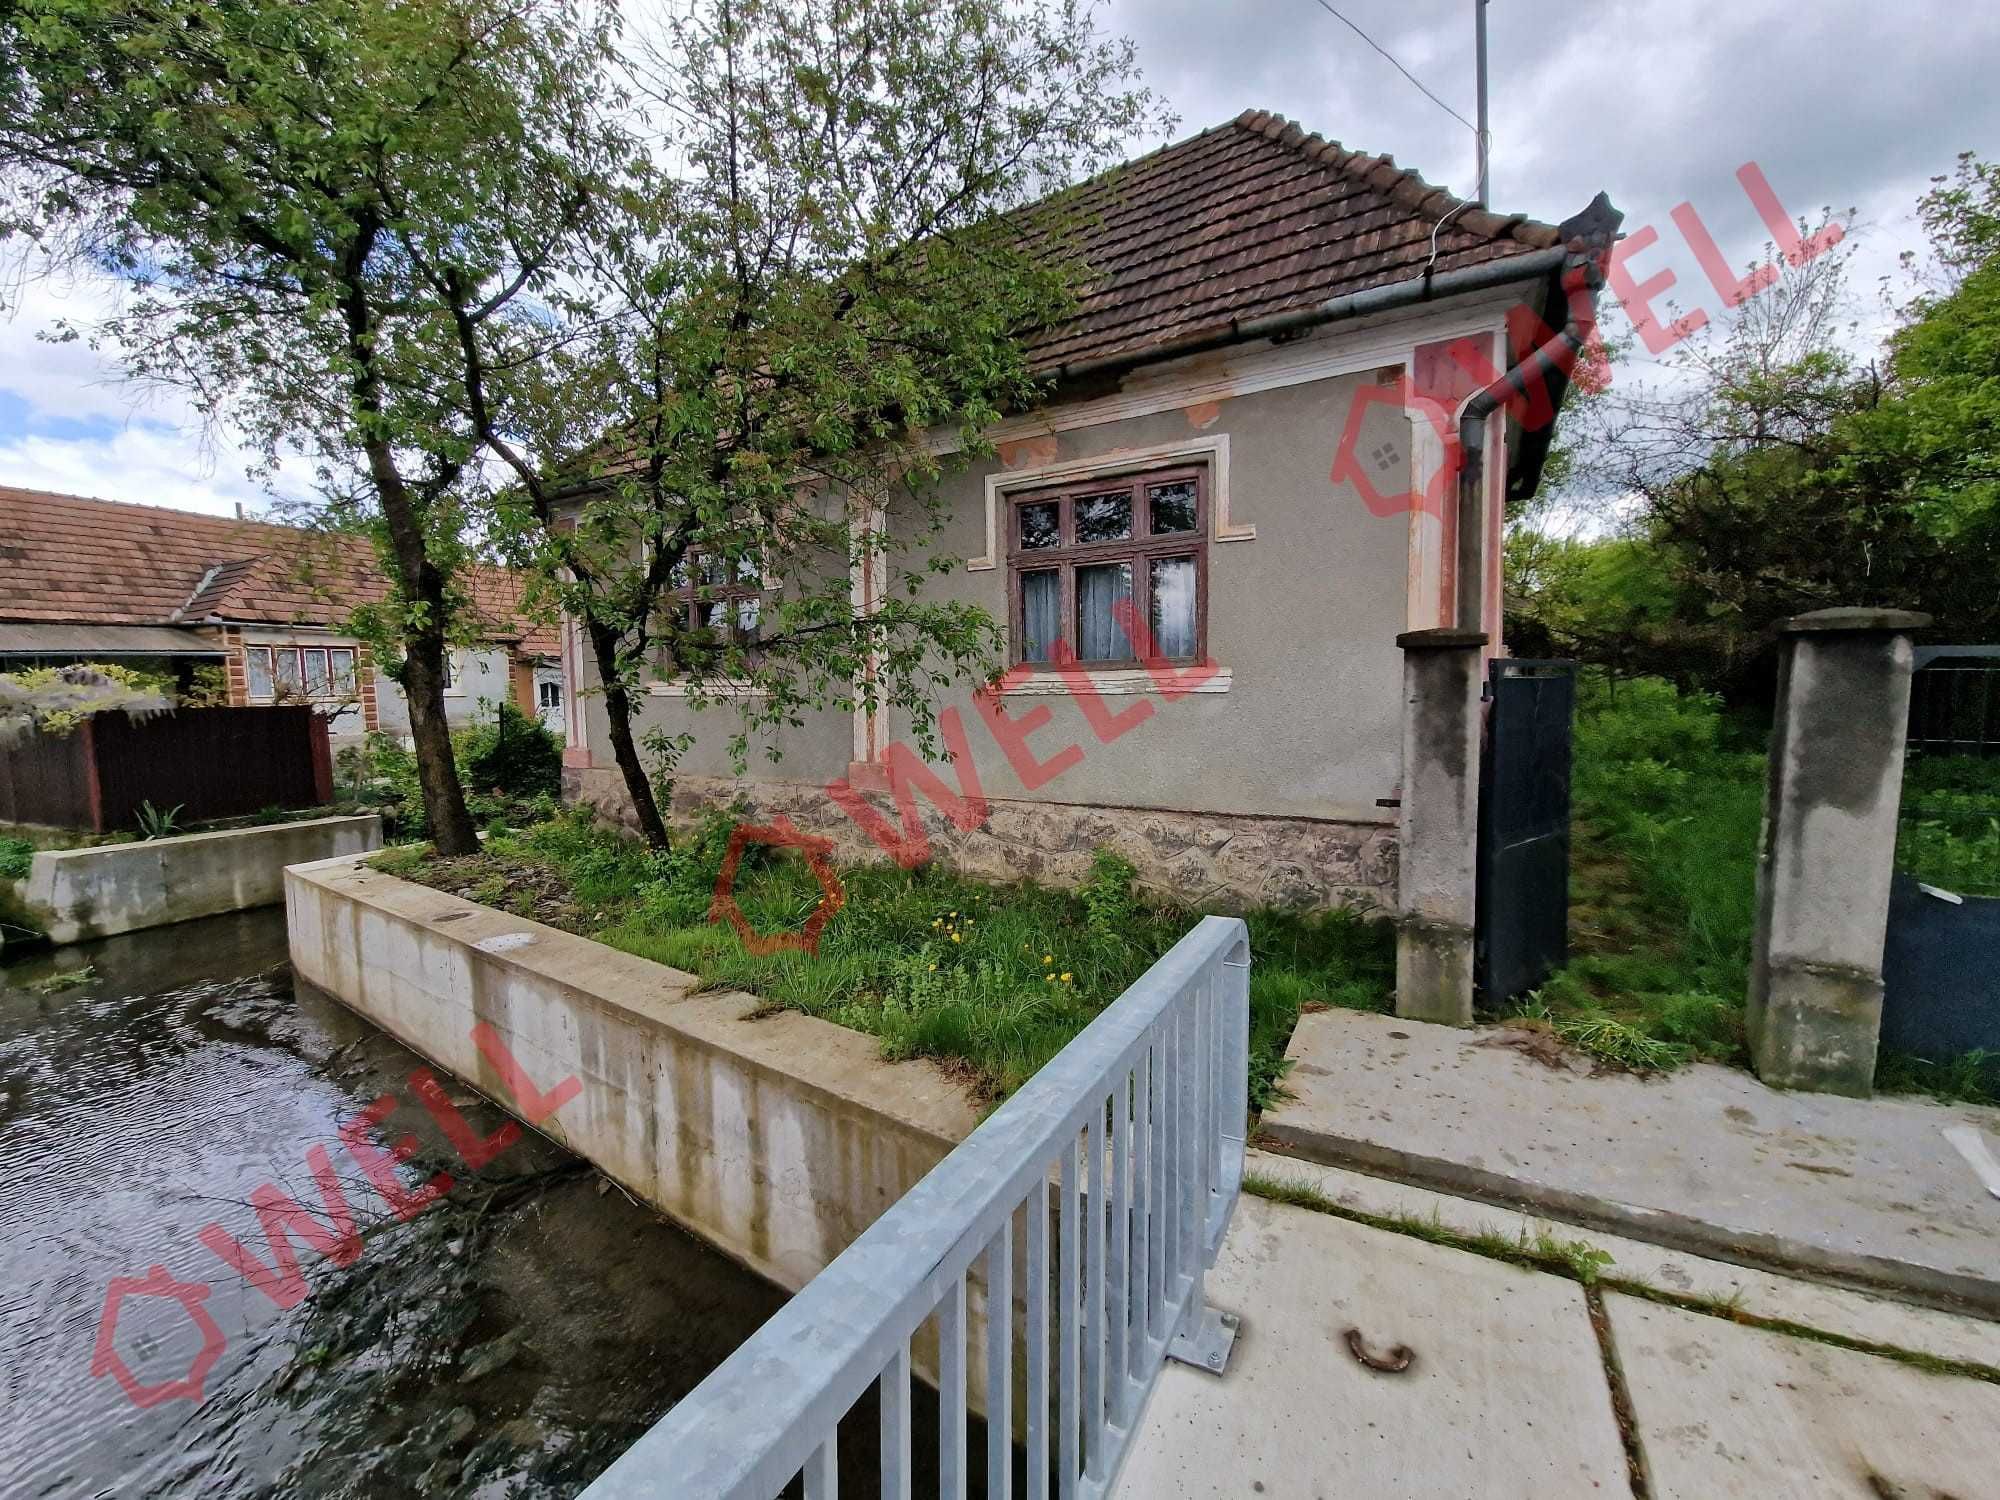 De vânzare o casă familială situat în Aluniș , județul Mureș!